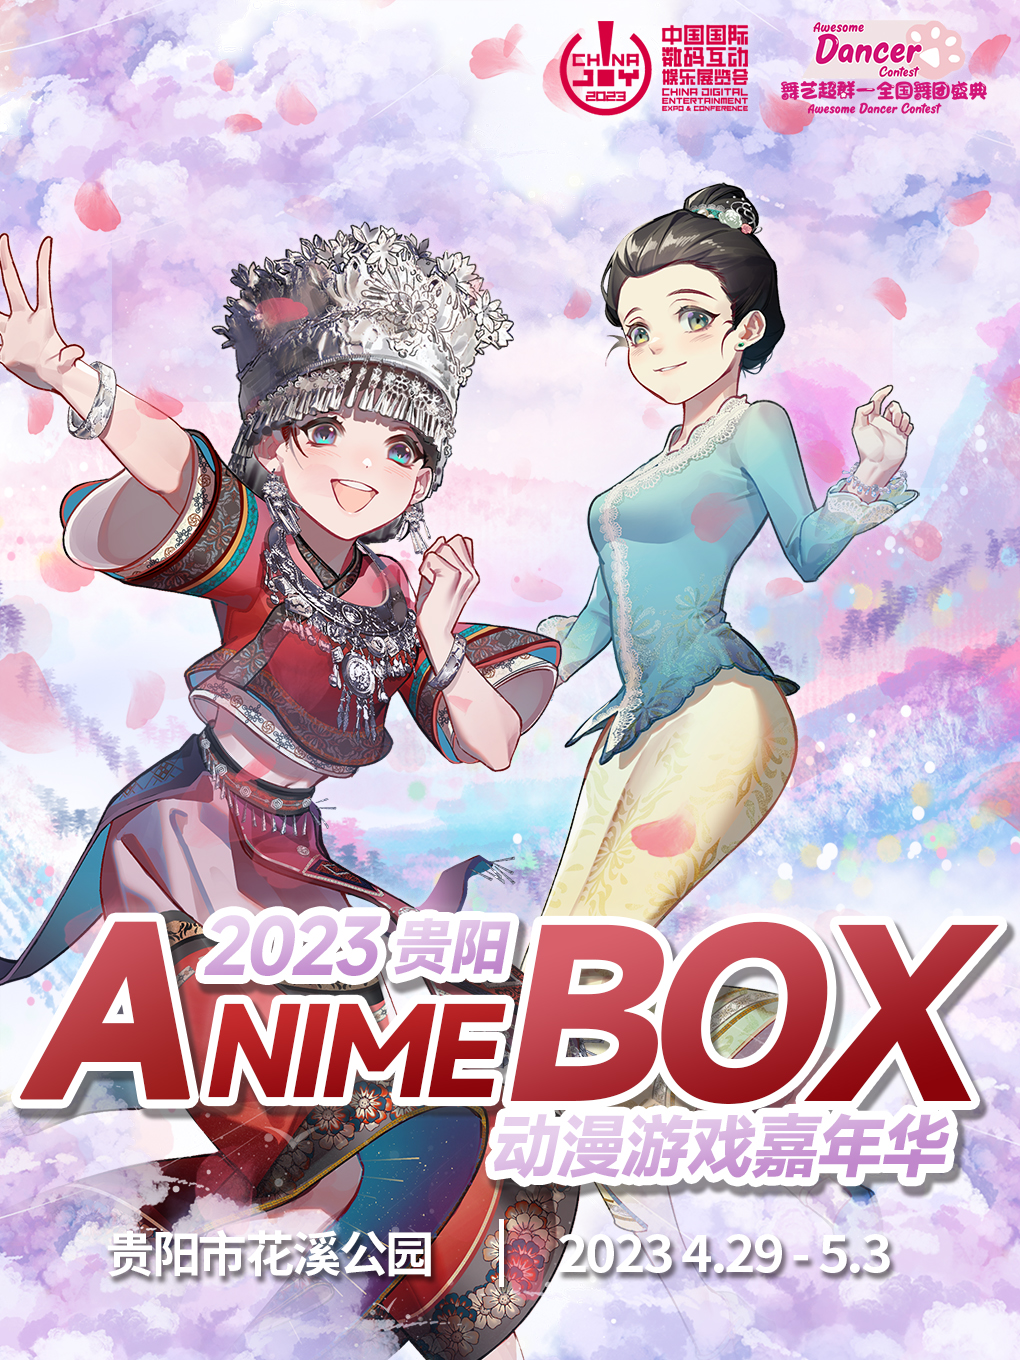 贵阳·AnimeBox动漫游戏嘉年华